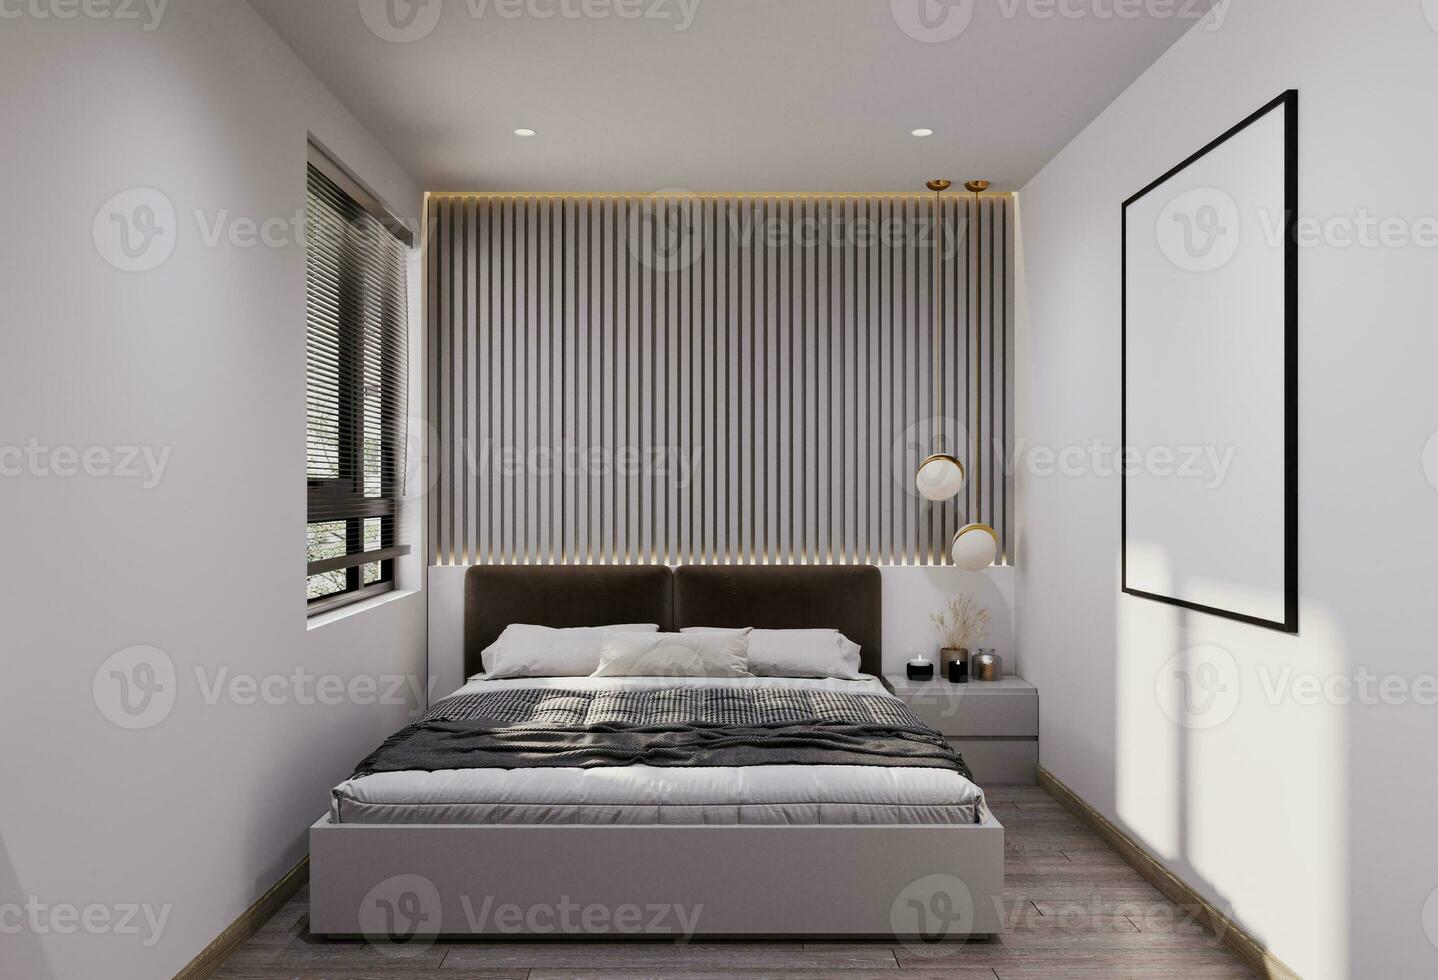 gris y acogedor cama con frente colocación junto a el ventana, Bosquejo blanco póster colgando en el muro, 3d representación foto